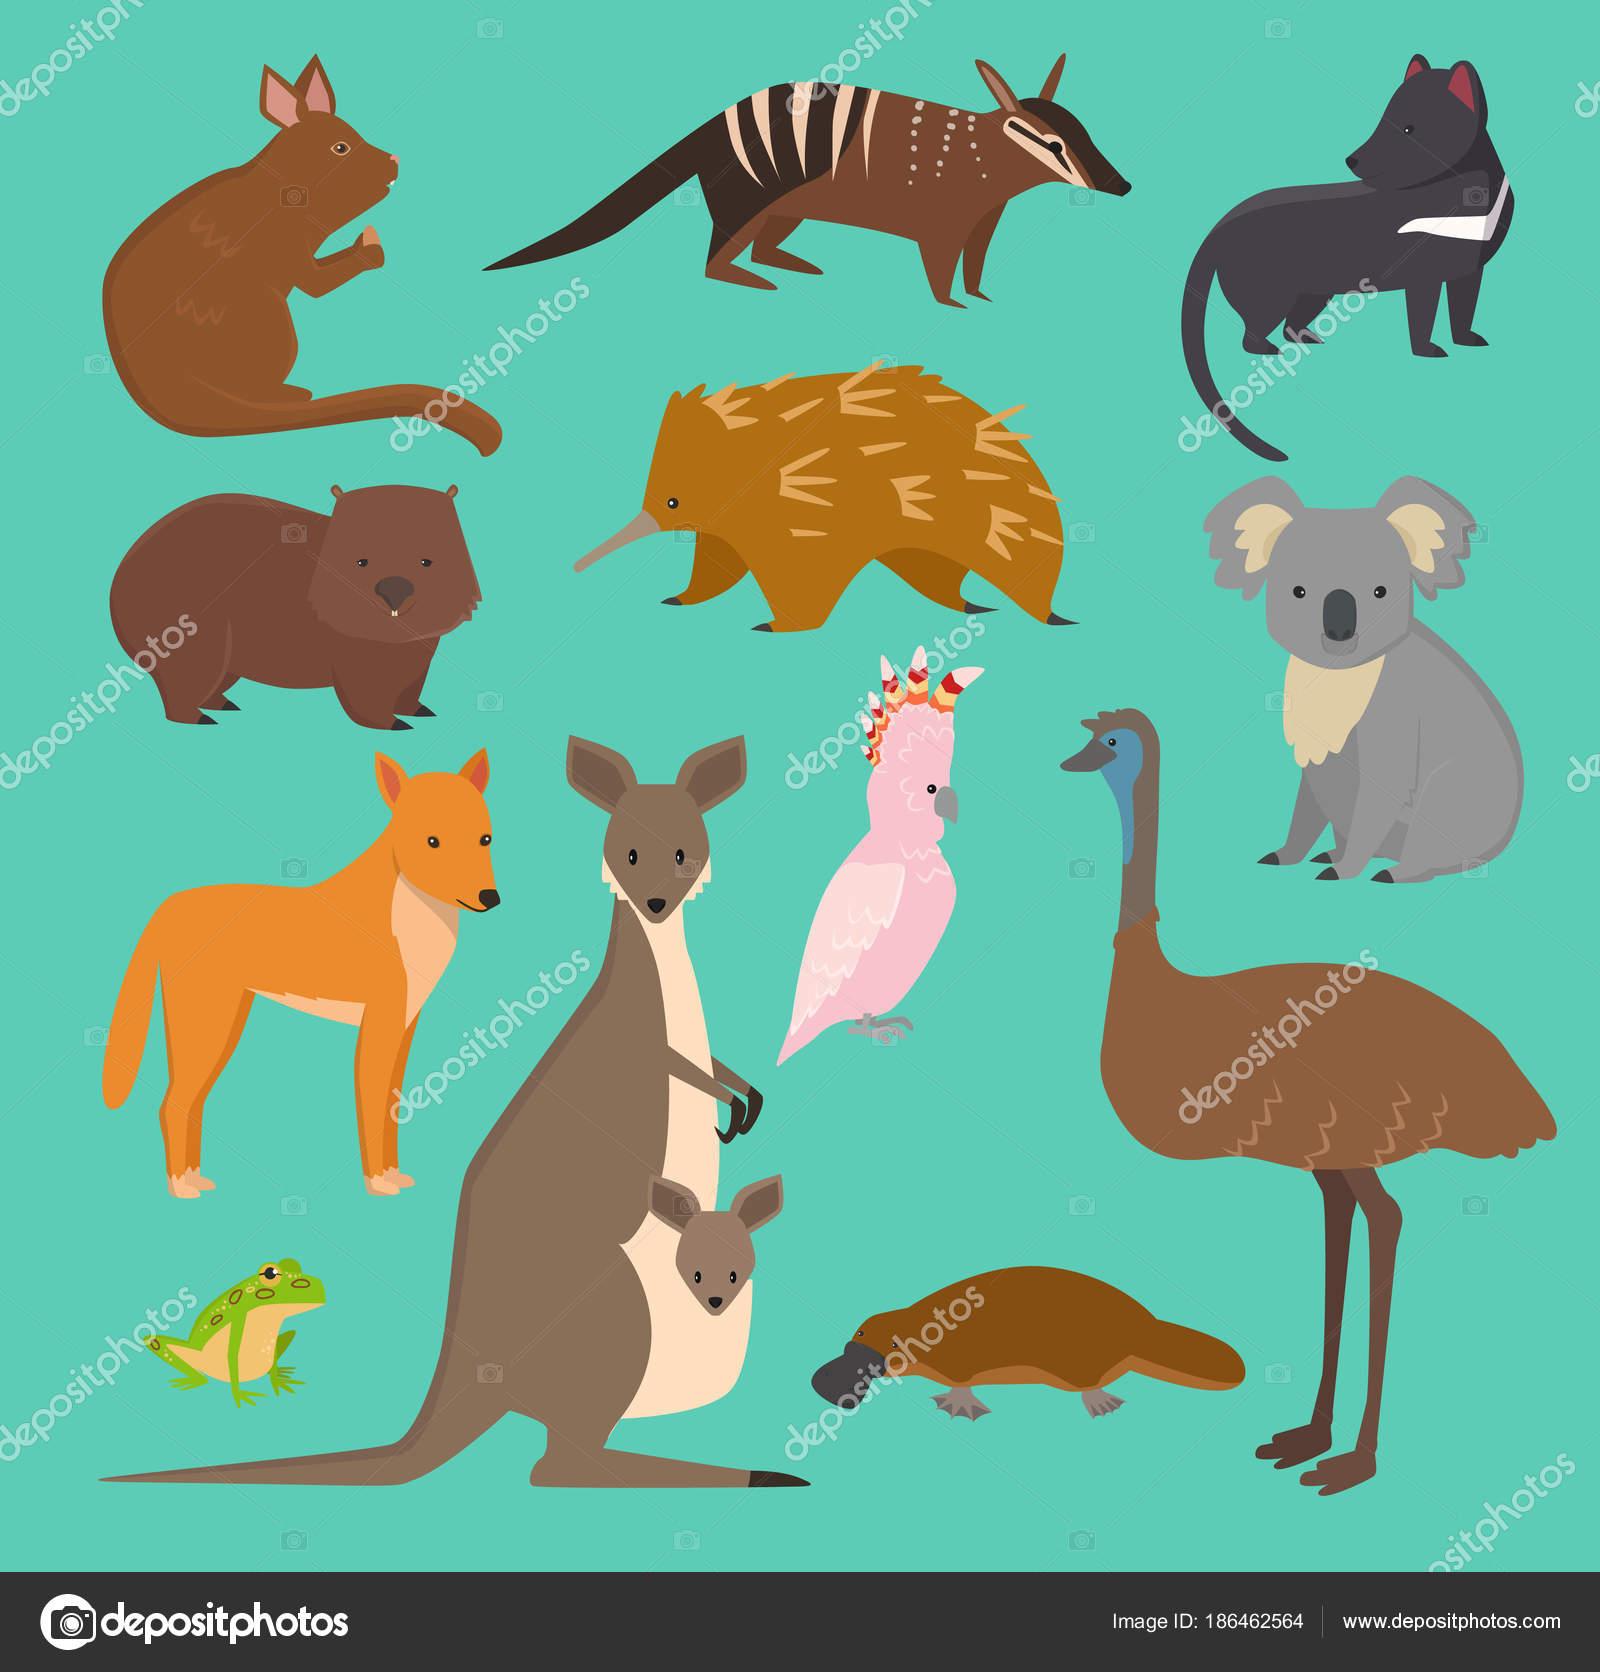 可爱动物画图片-可爱动物画素材下载-众图网